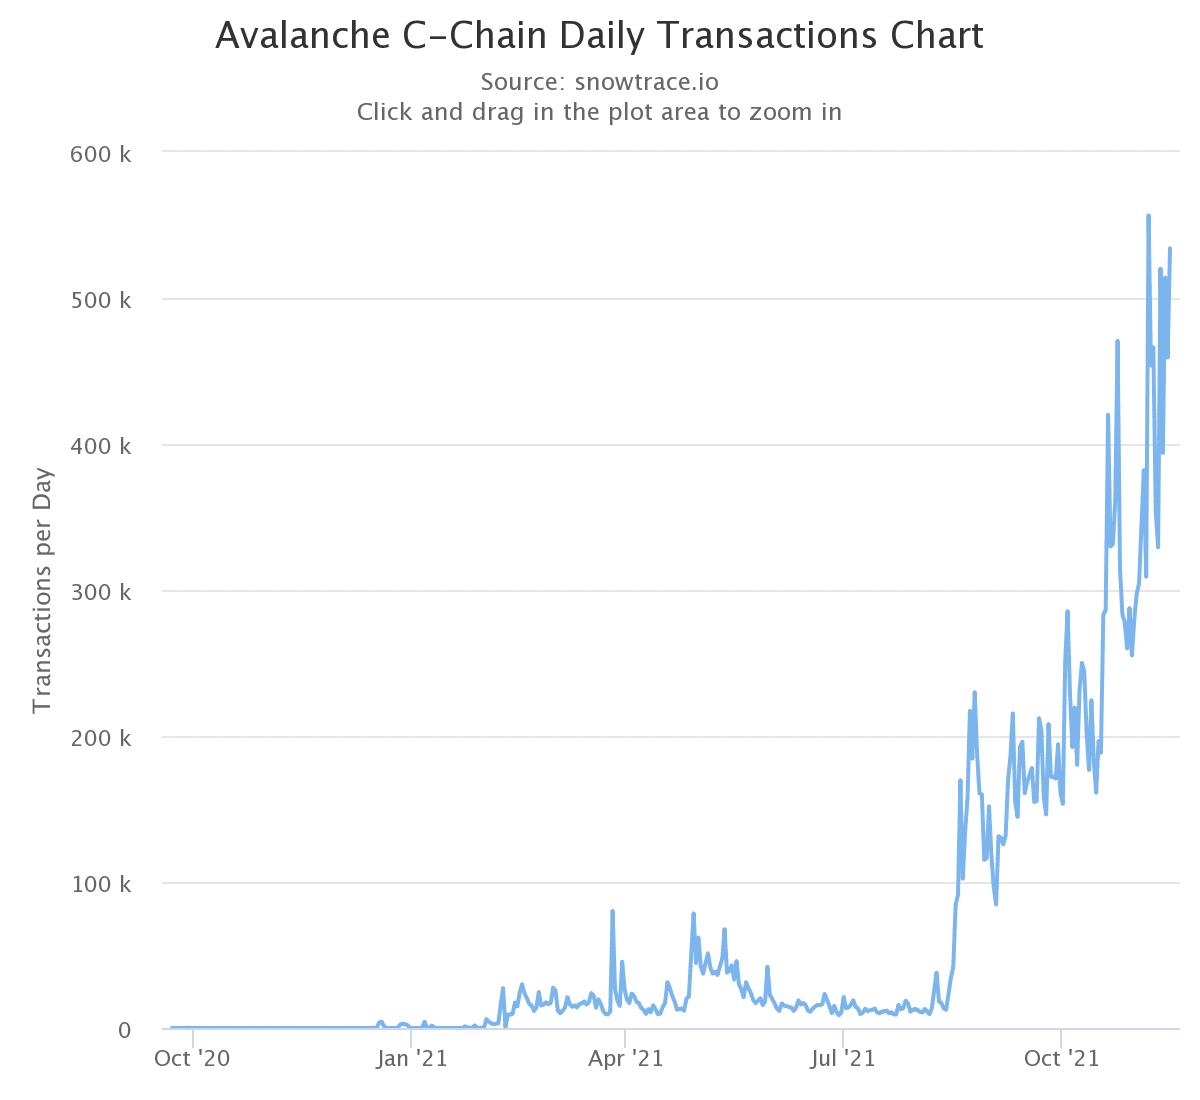 Grafik zur Anzahl der täglichen Transaktionen auf der C-Chain von Avalanche (Quelle: SnowTrace)